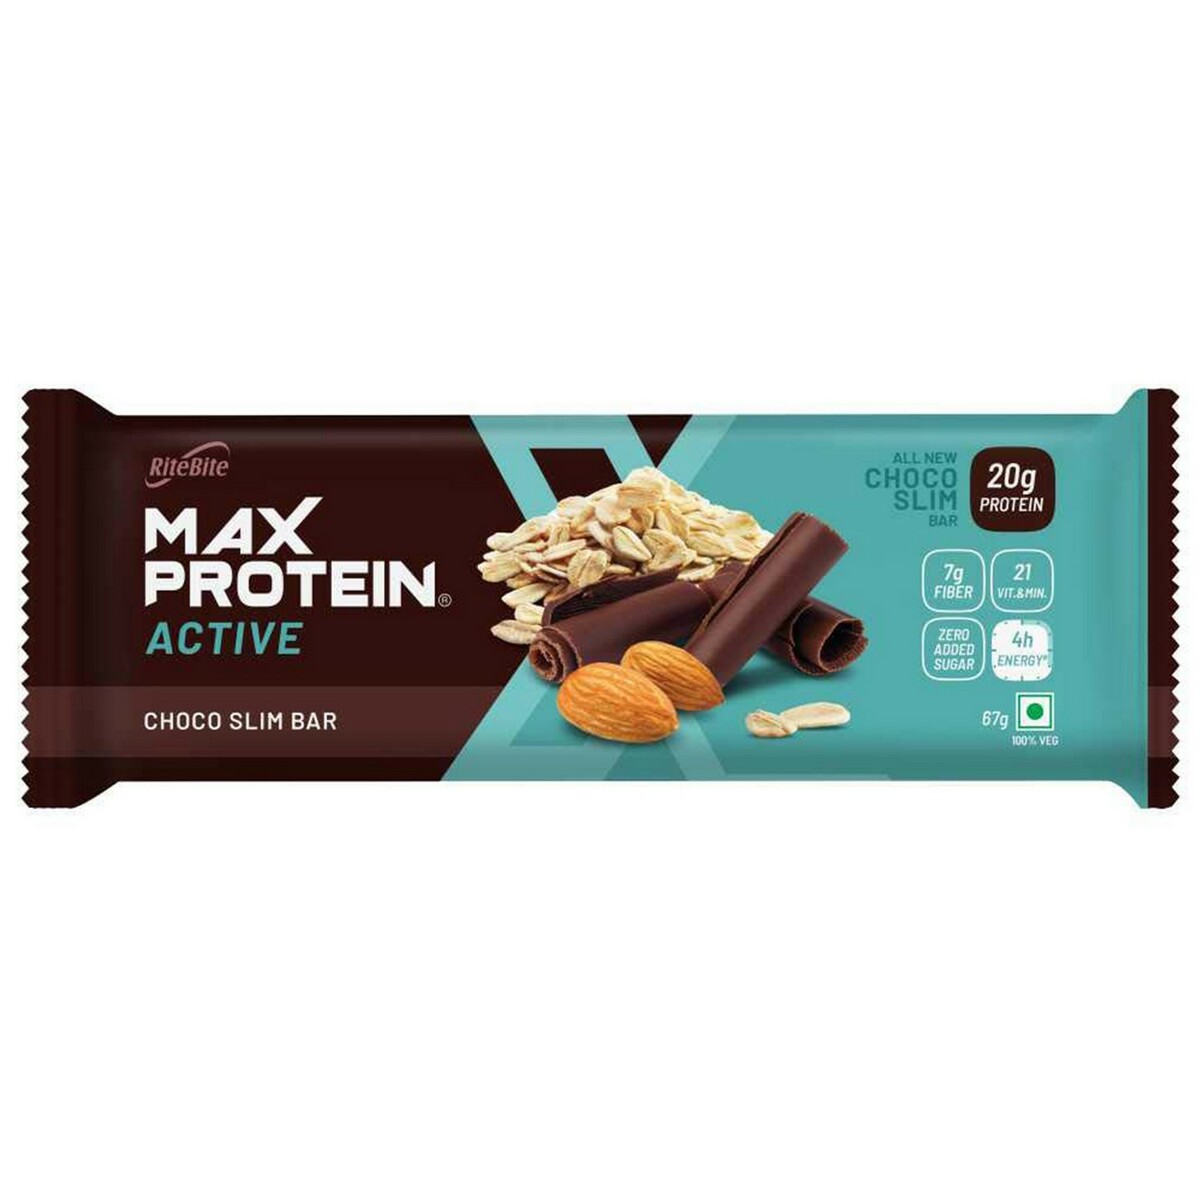 Rite Bite Max Protein Choco Slim Bar 67g